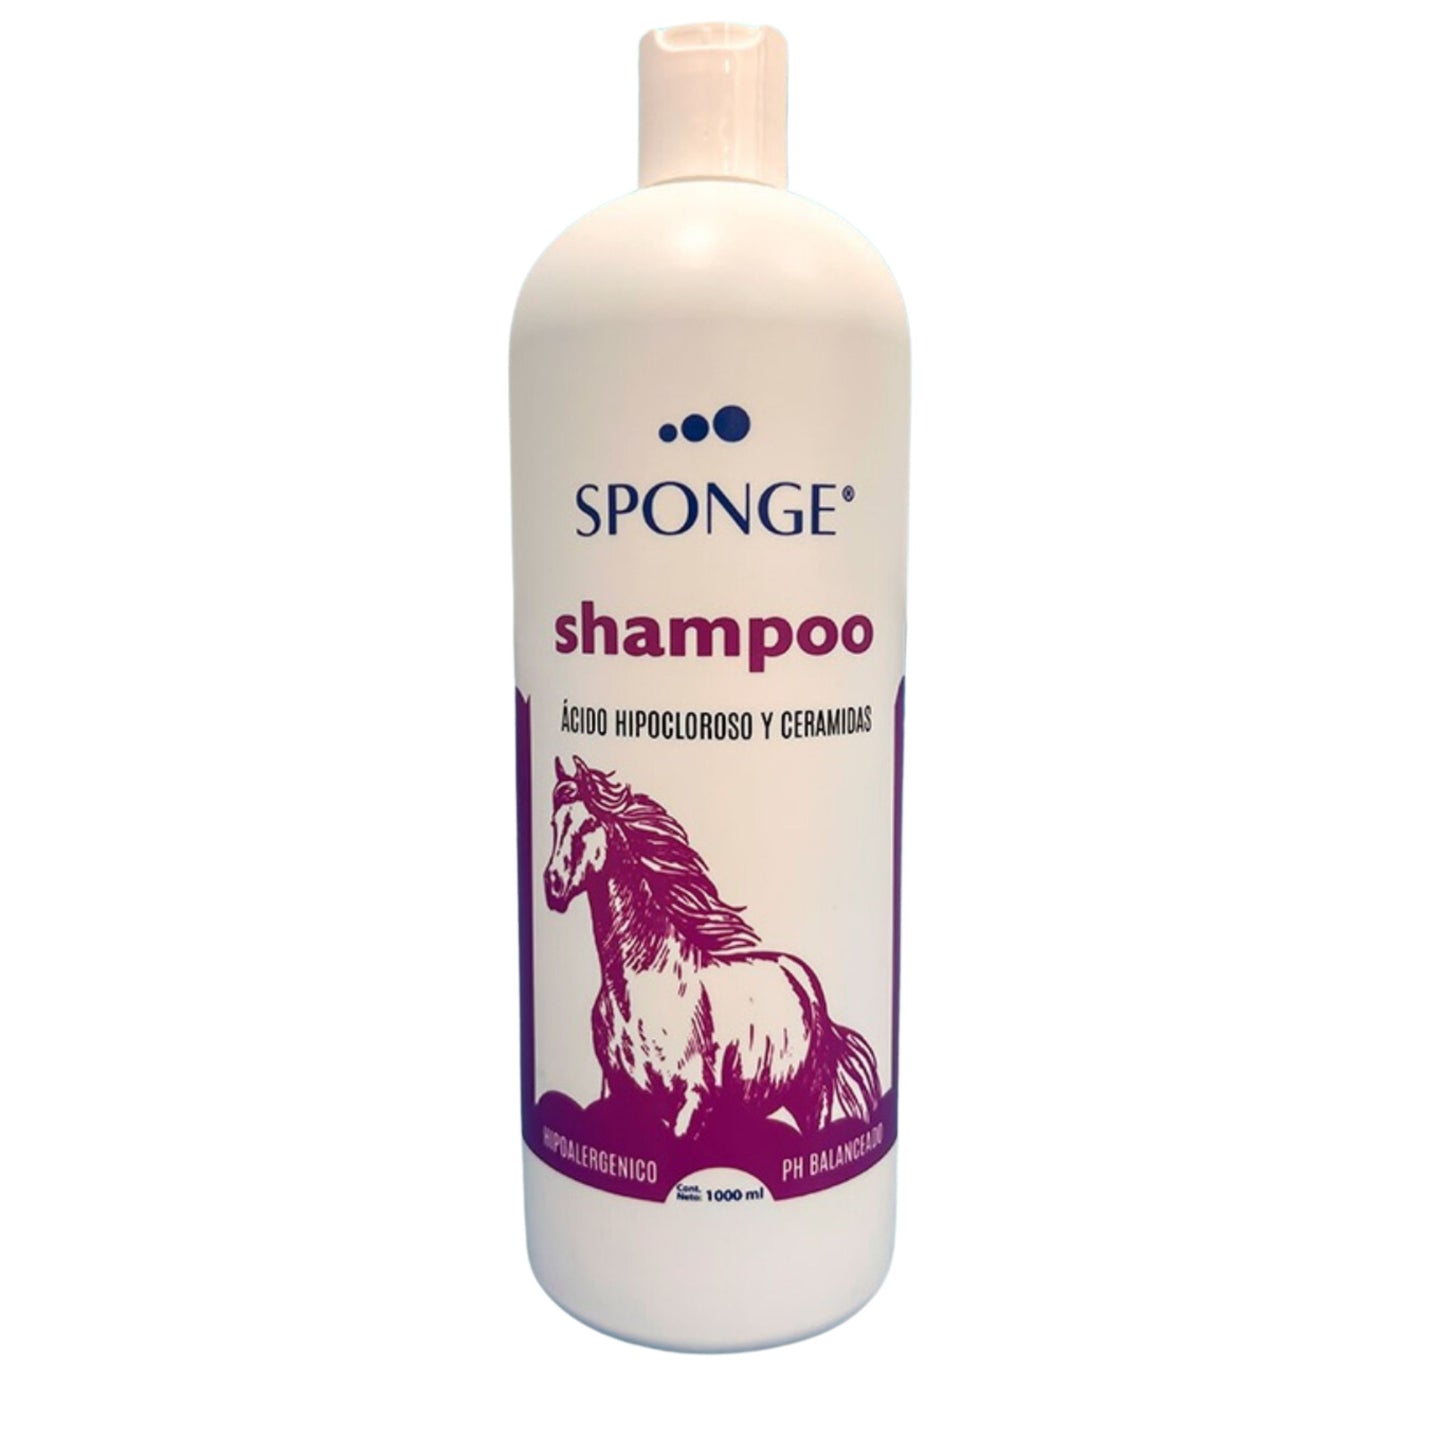 Sponge shampoo de 500mL